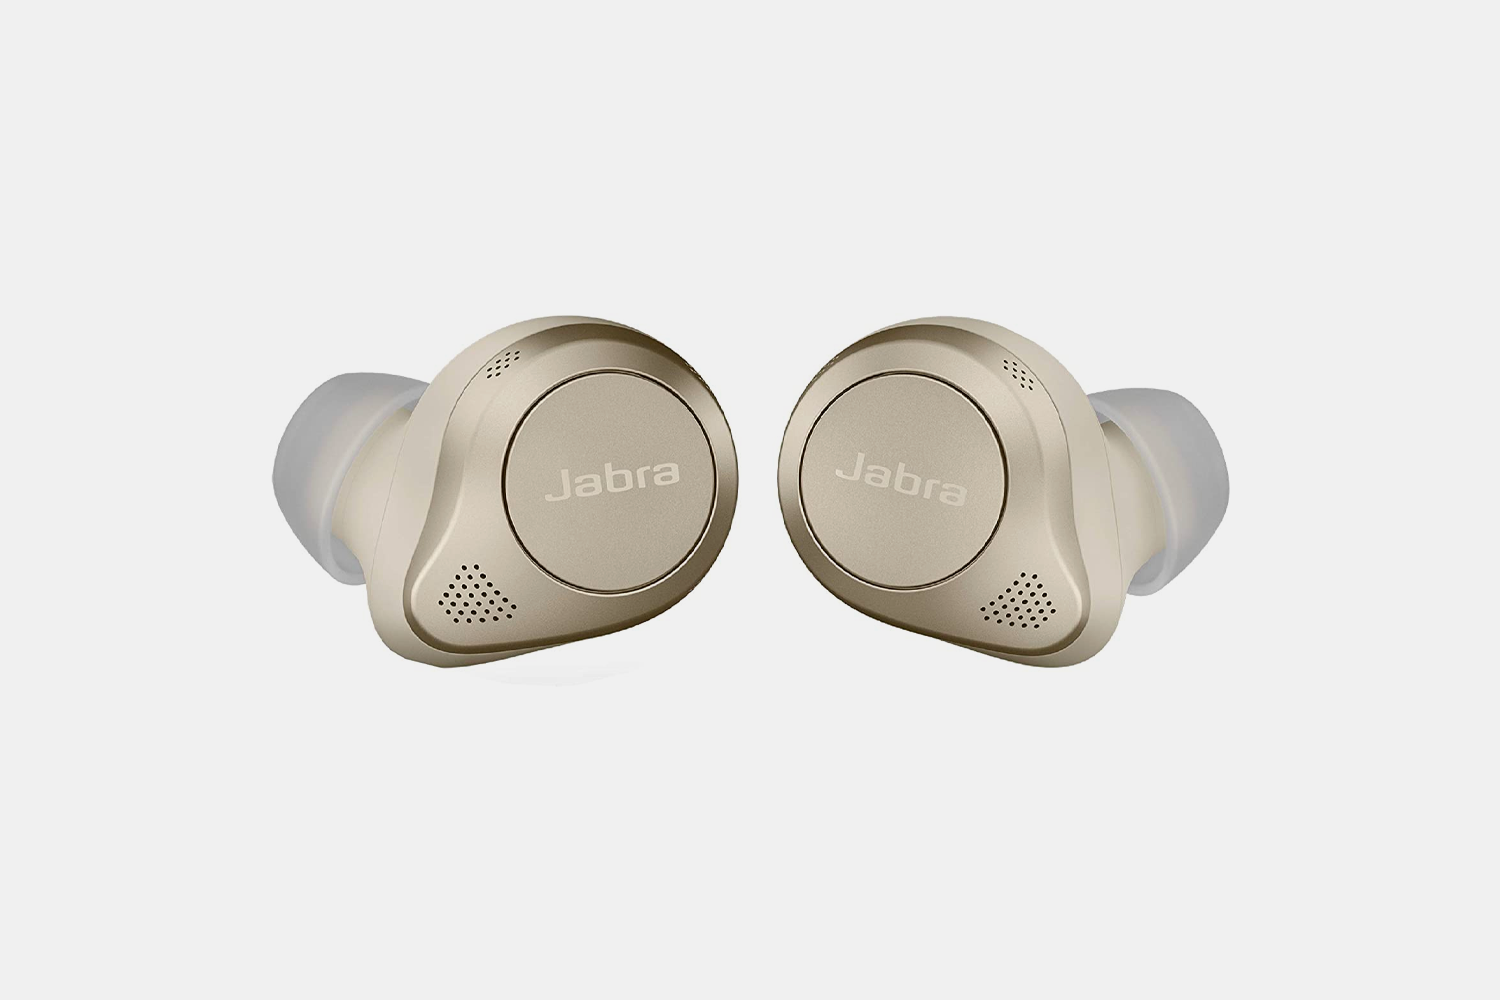  Jabra Elite 85t True Wireless Bluetooth Earbuds, Gold Beige